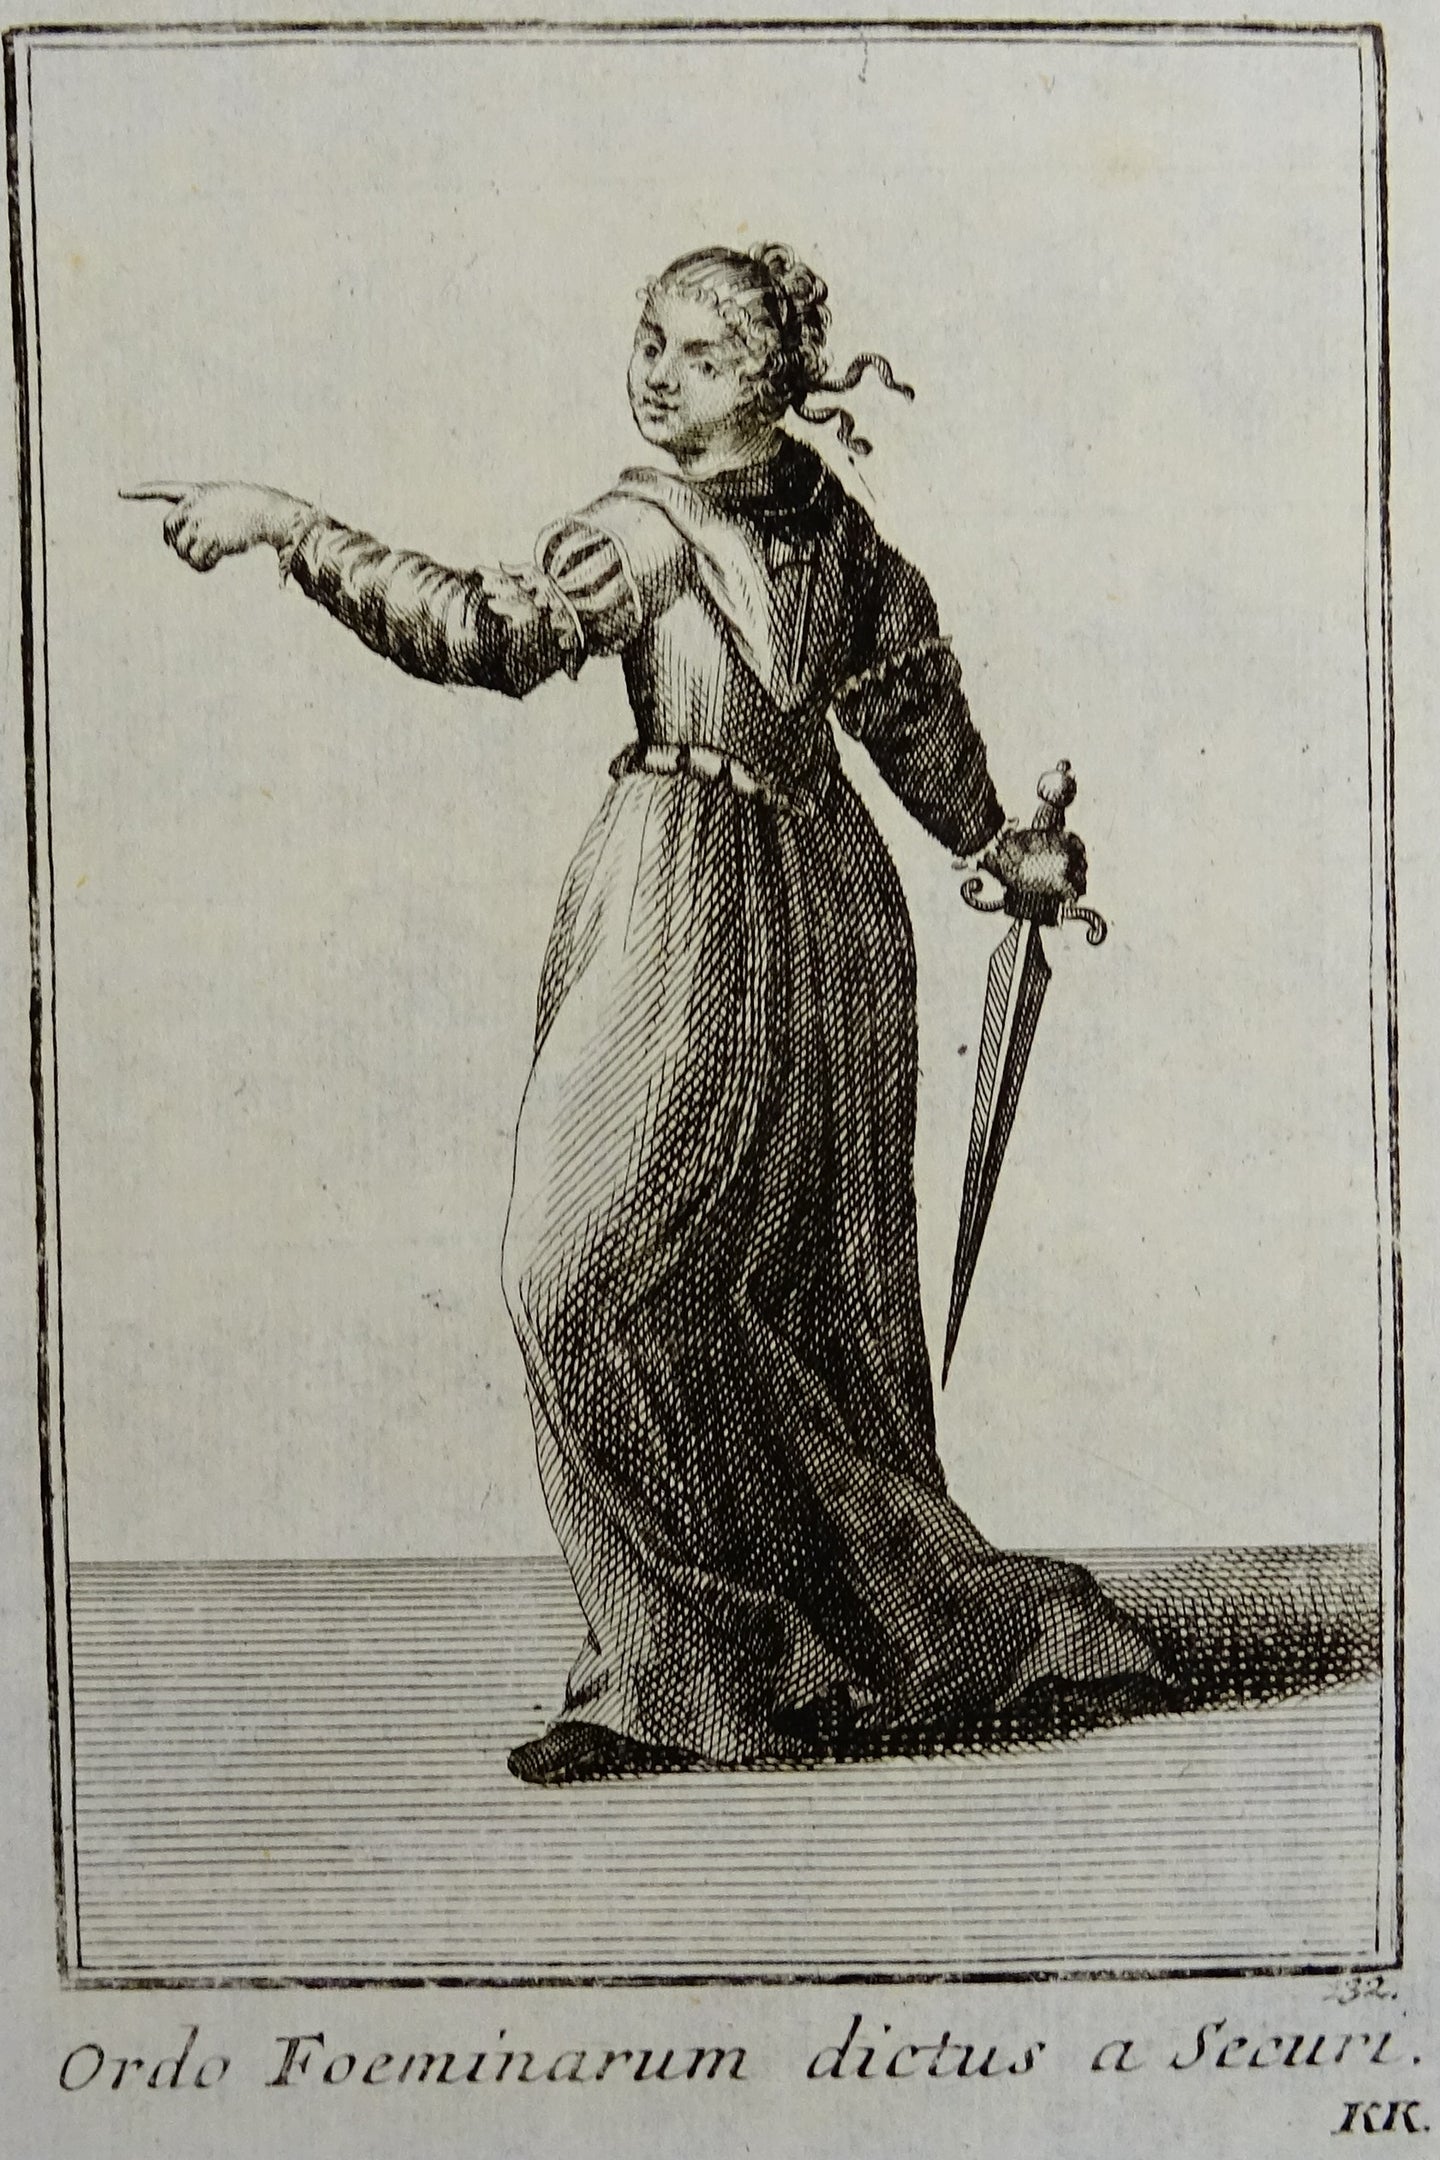 Ordo Foeminarum dictus a Securi - Ordinum equestrium et militarium - ca 1711